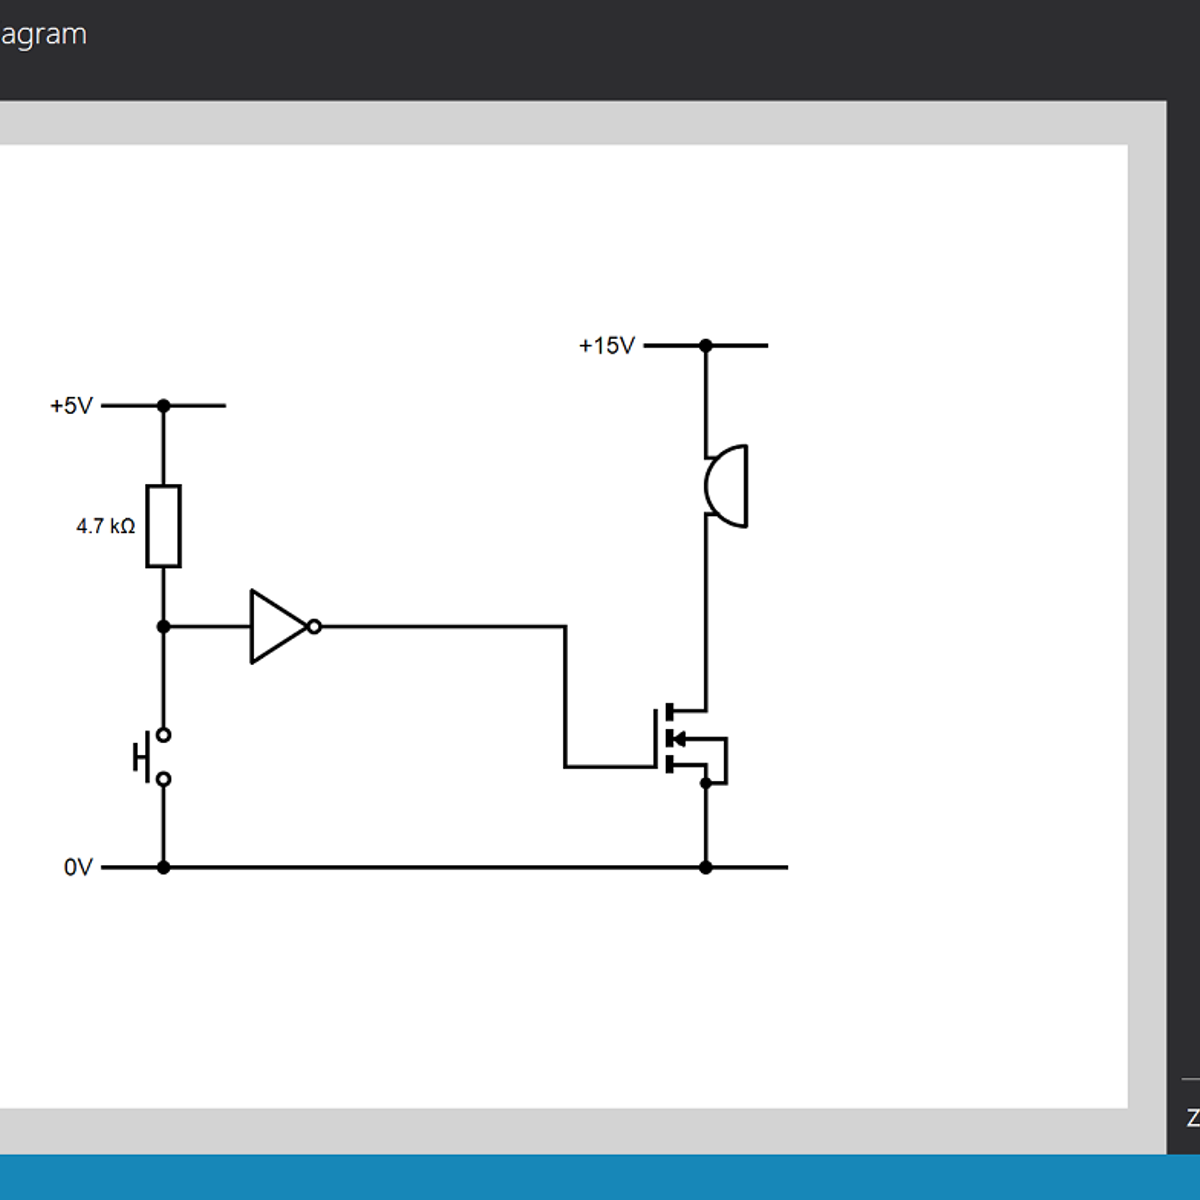 circuit diagram maker software free download for mac